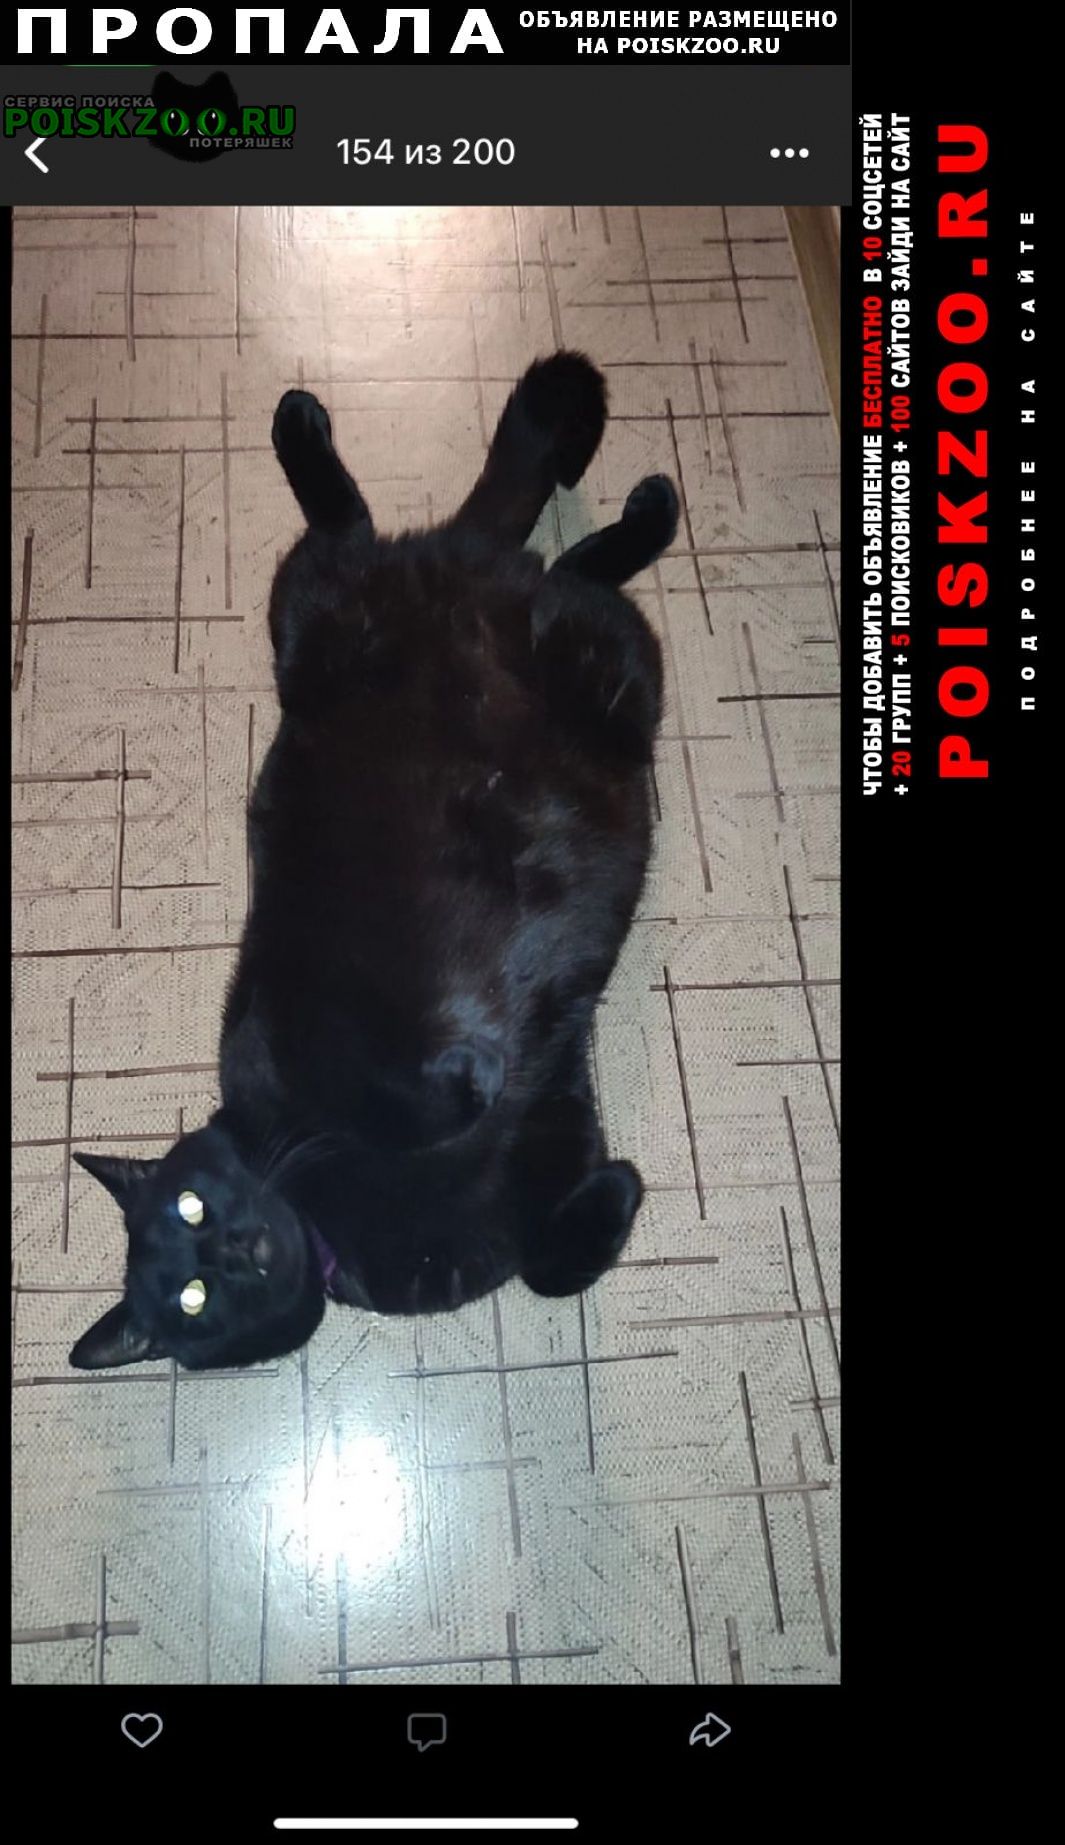 Пропал кот, огромный черный, выбрит живот. Санкт-Петербург